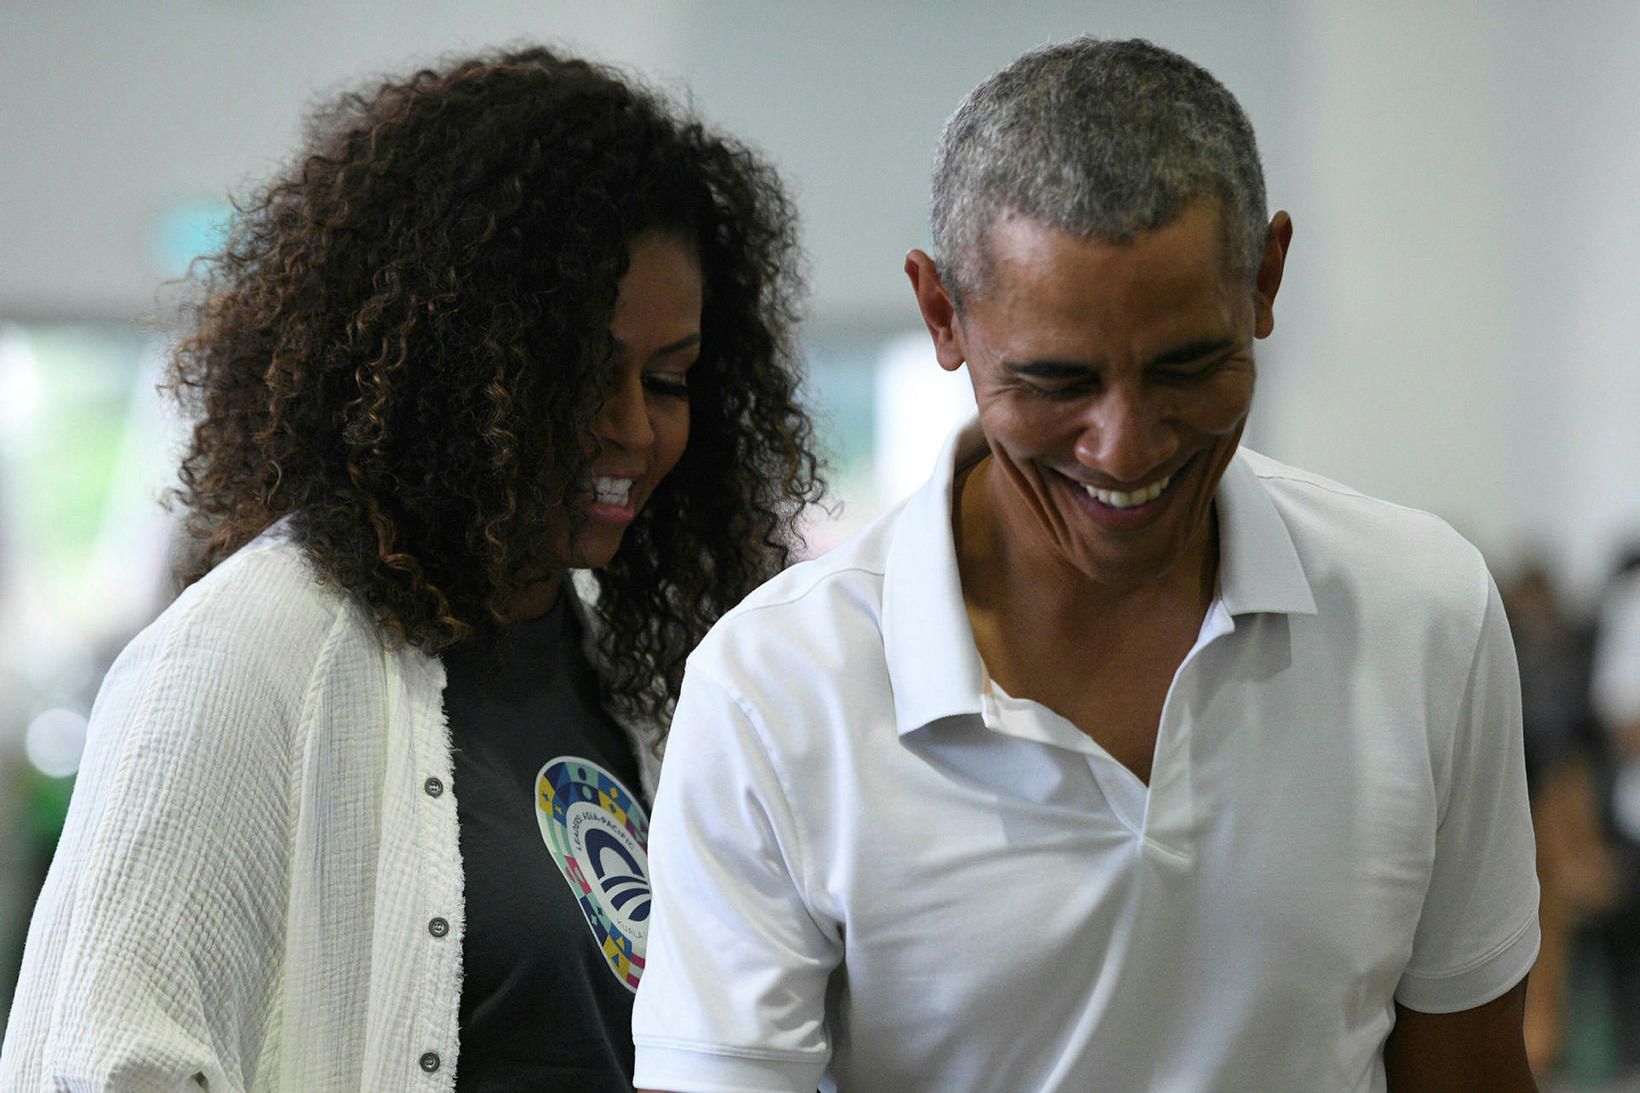 Barack ásamt eiginkonu sinni, Michelle Obama, í Malasíu á dögunum.